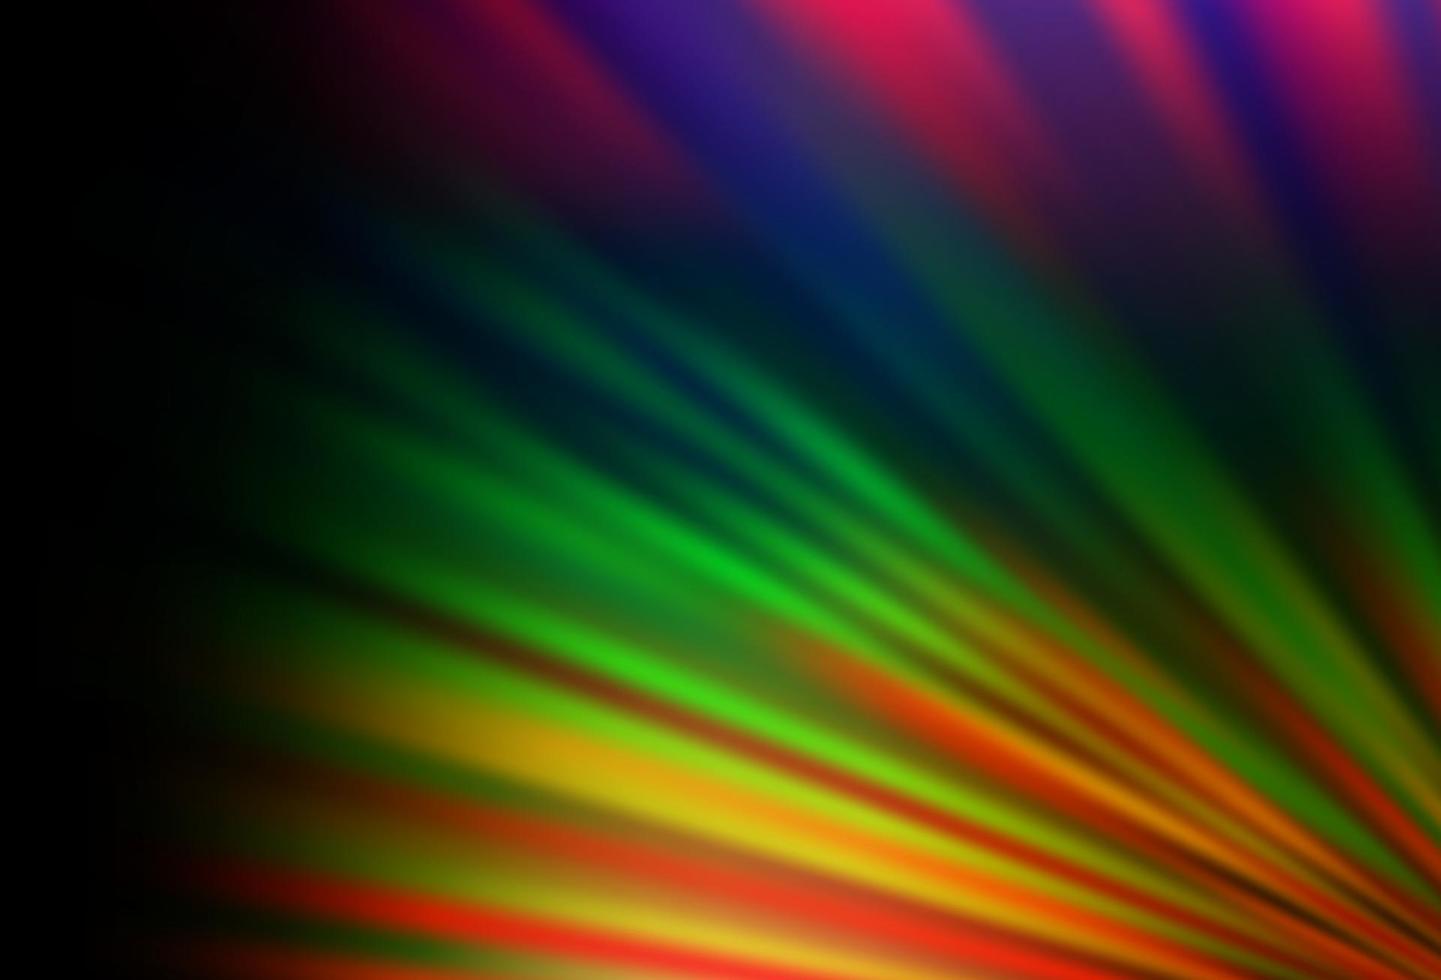 sfondo vettoriale arcobaleno multicolore scuro con lunghe linee.